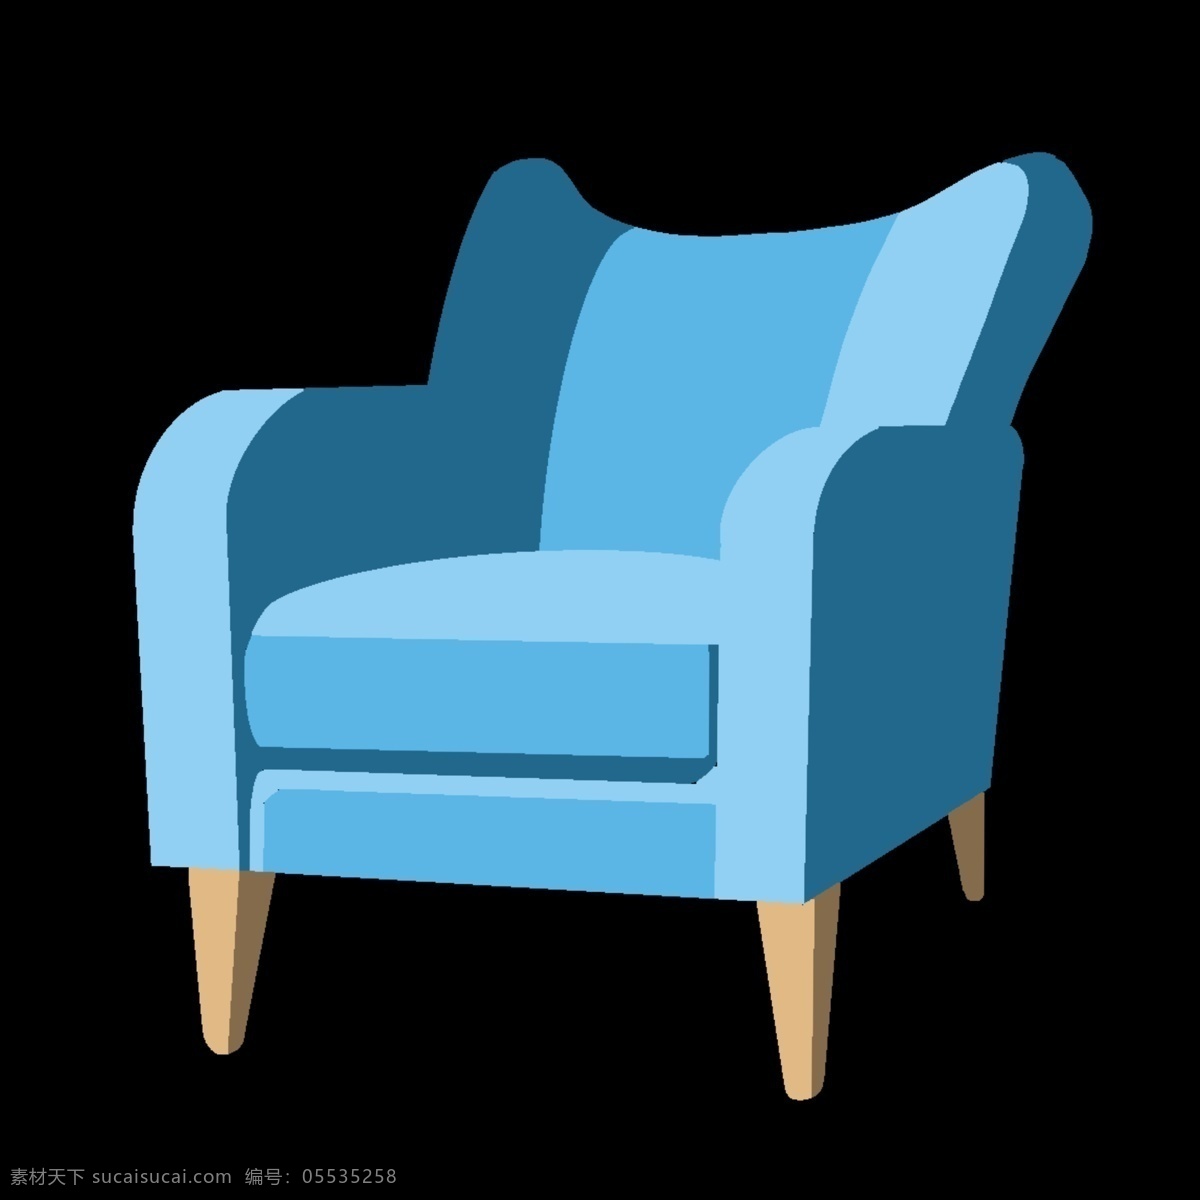 天蓝色 家具 椅子 插画 天蓝色椅子 卡通插画 椅子插画 家具插画 实木家具 木质家具 天蓝色坐垫